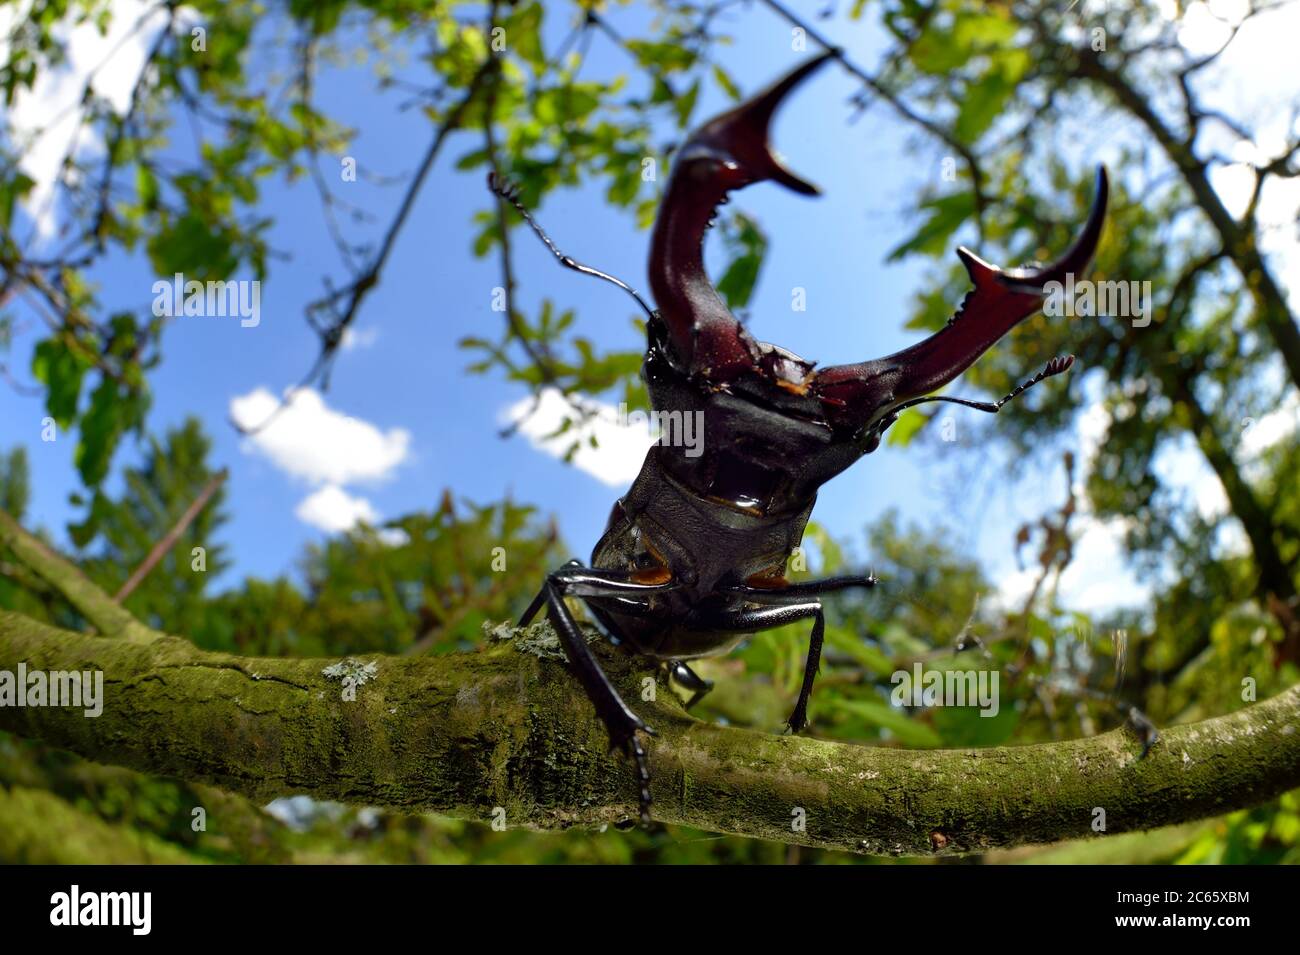 Rivaux Stag scarabée (Lucanus cervus) deux mâles affichant un comportement agressif sur la branche d'un chêne, Réserve de biosphère 'Niedersächsische Elbtalaue' / Vallée de l'Elbe en Basse-Saxe, Allemagne Banque D'Images